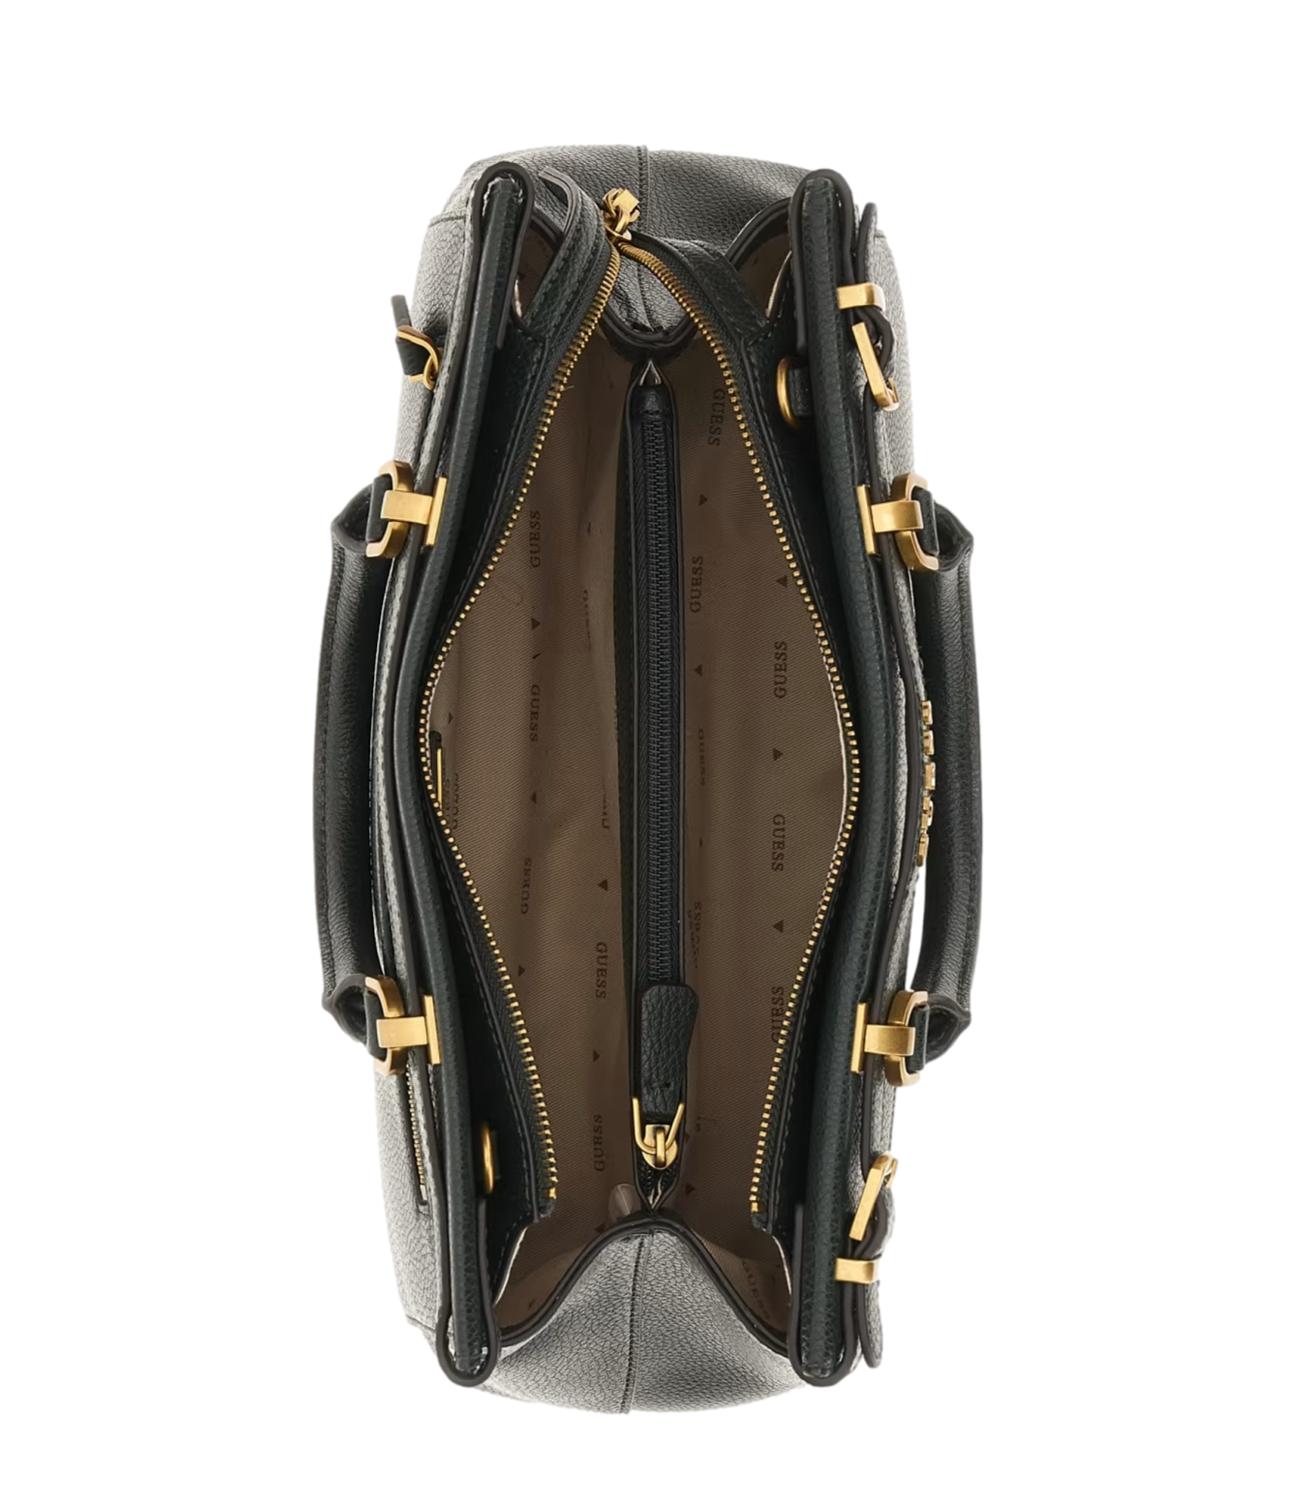 Sestri forest-like leather handbag for women